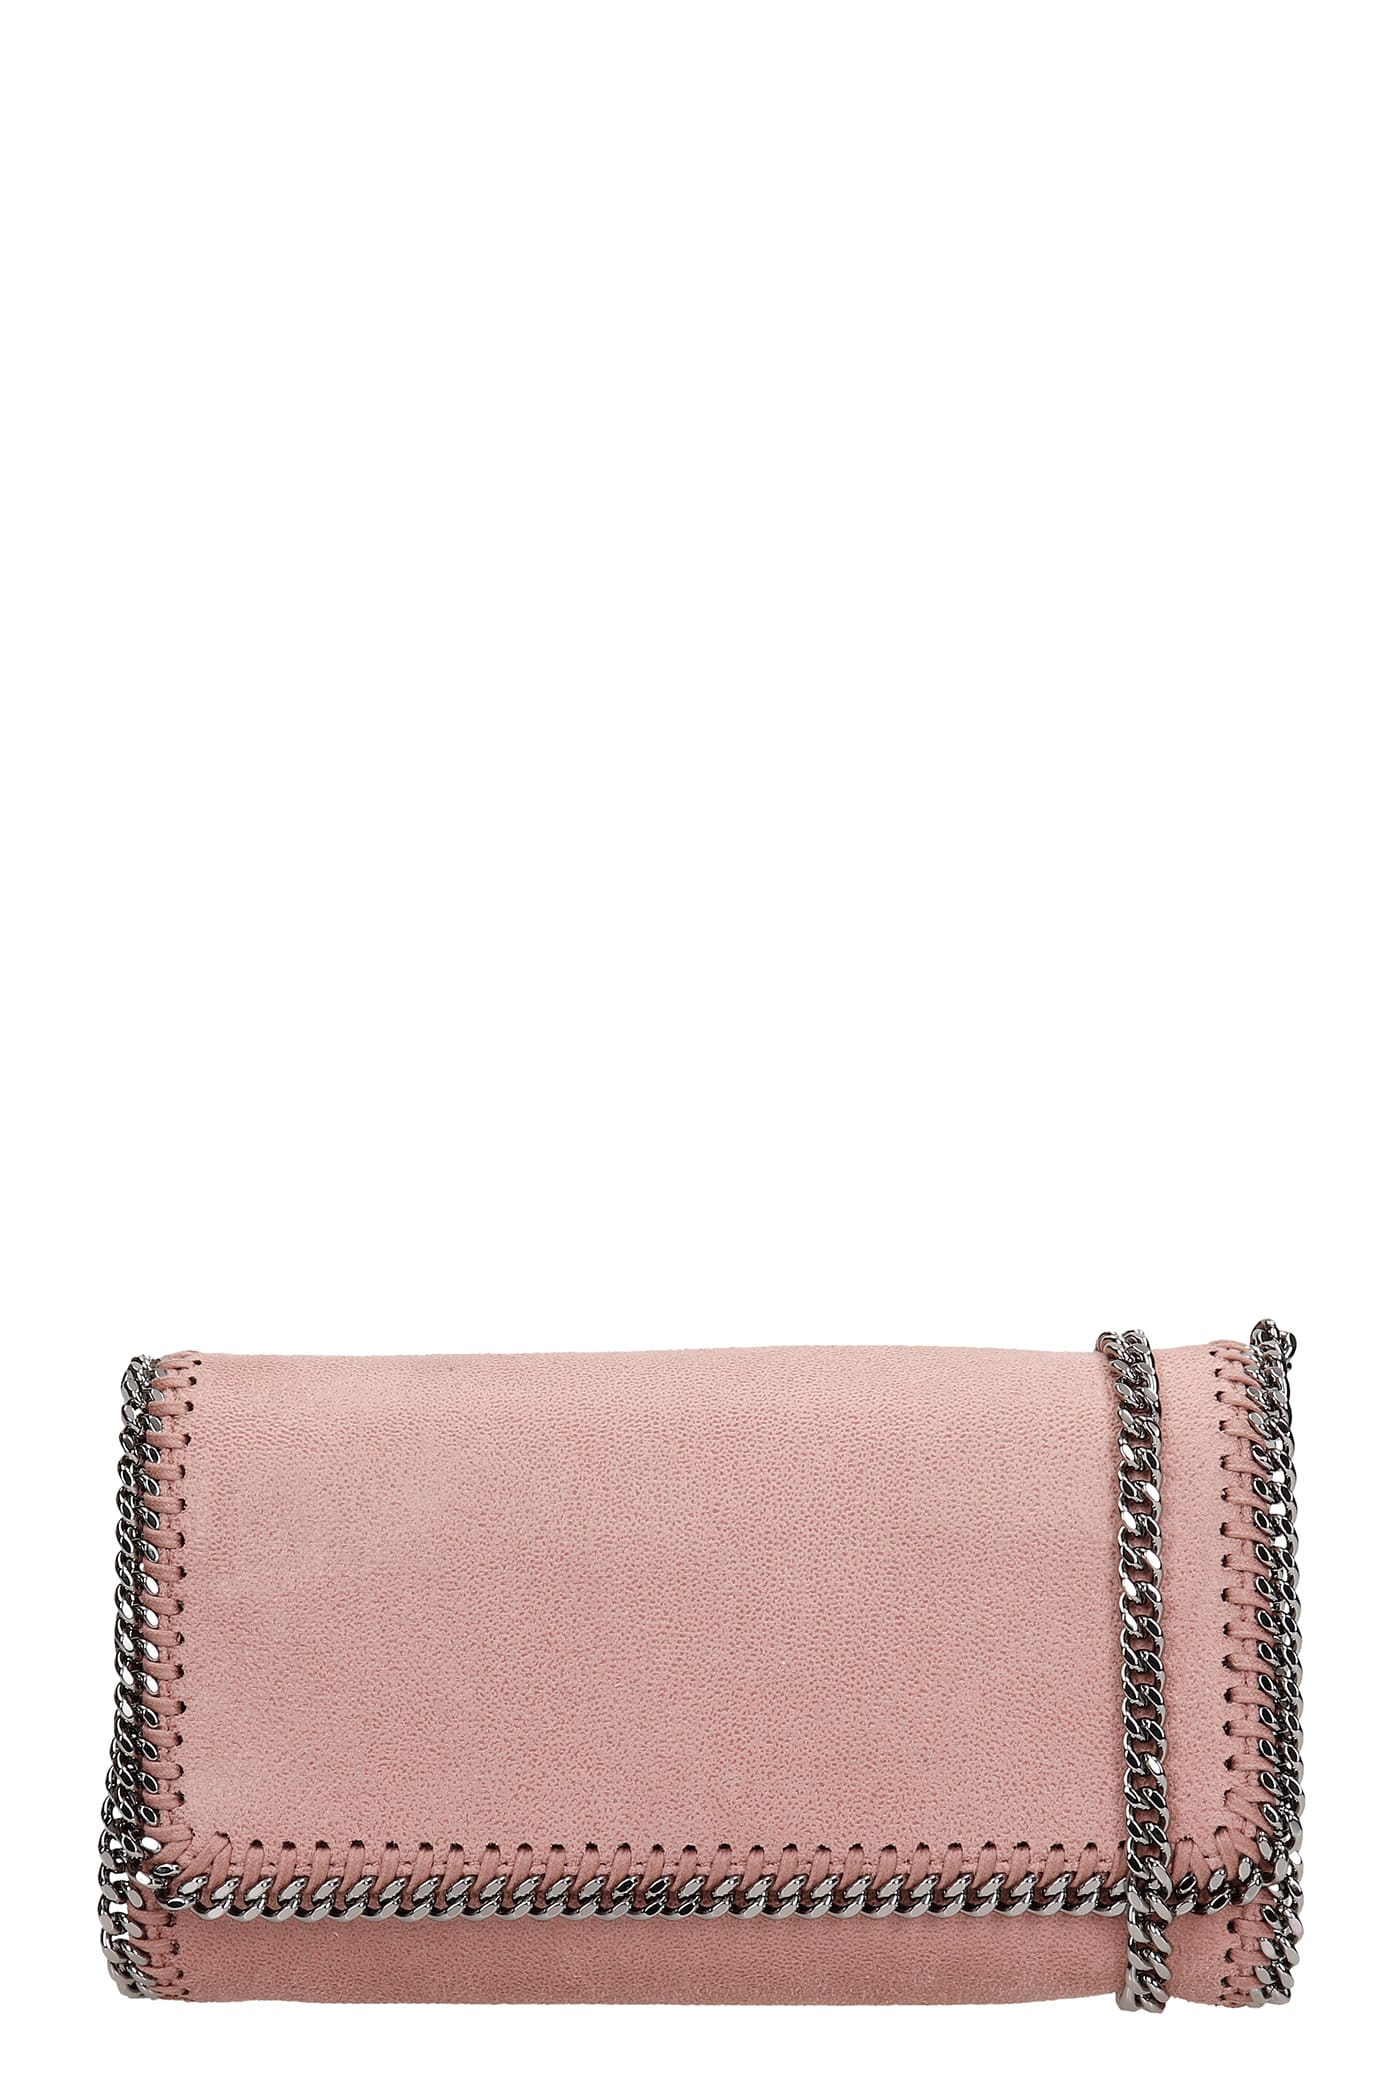 Stella McCartney Falabella Shoulder Bag In Rose-pink Faux Leather